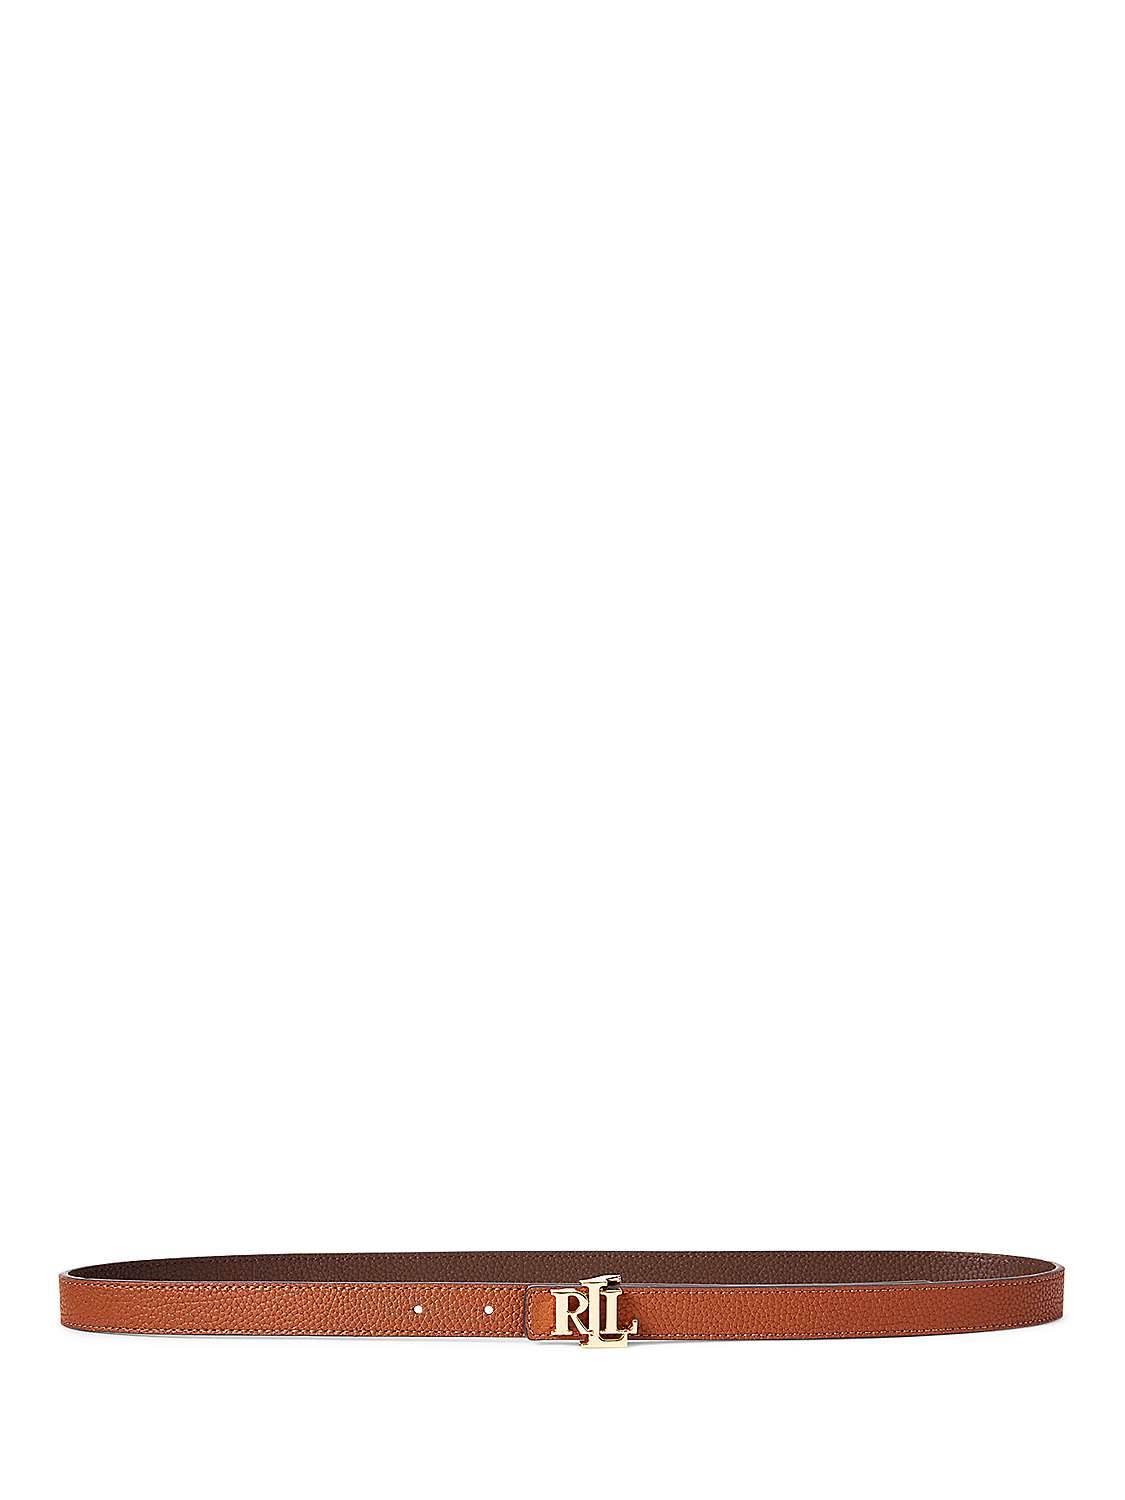 Buy Lauren Ralph Lauren 20 Reversible Leather Belt Online at johnlewis.com